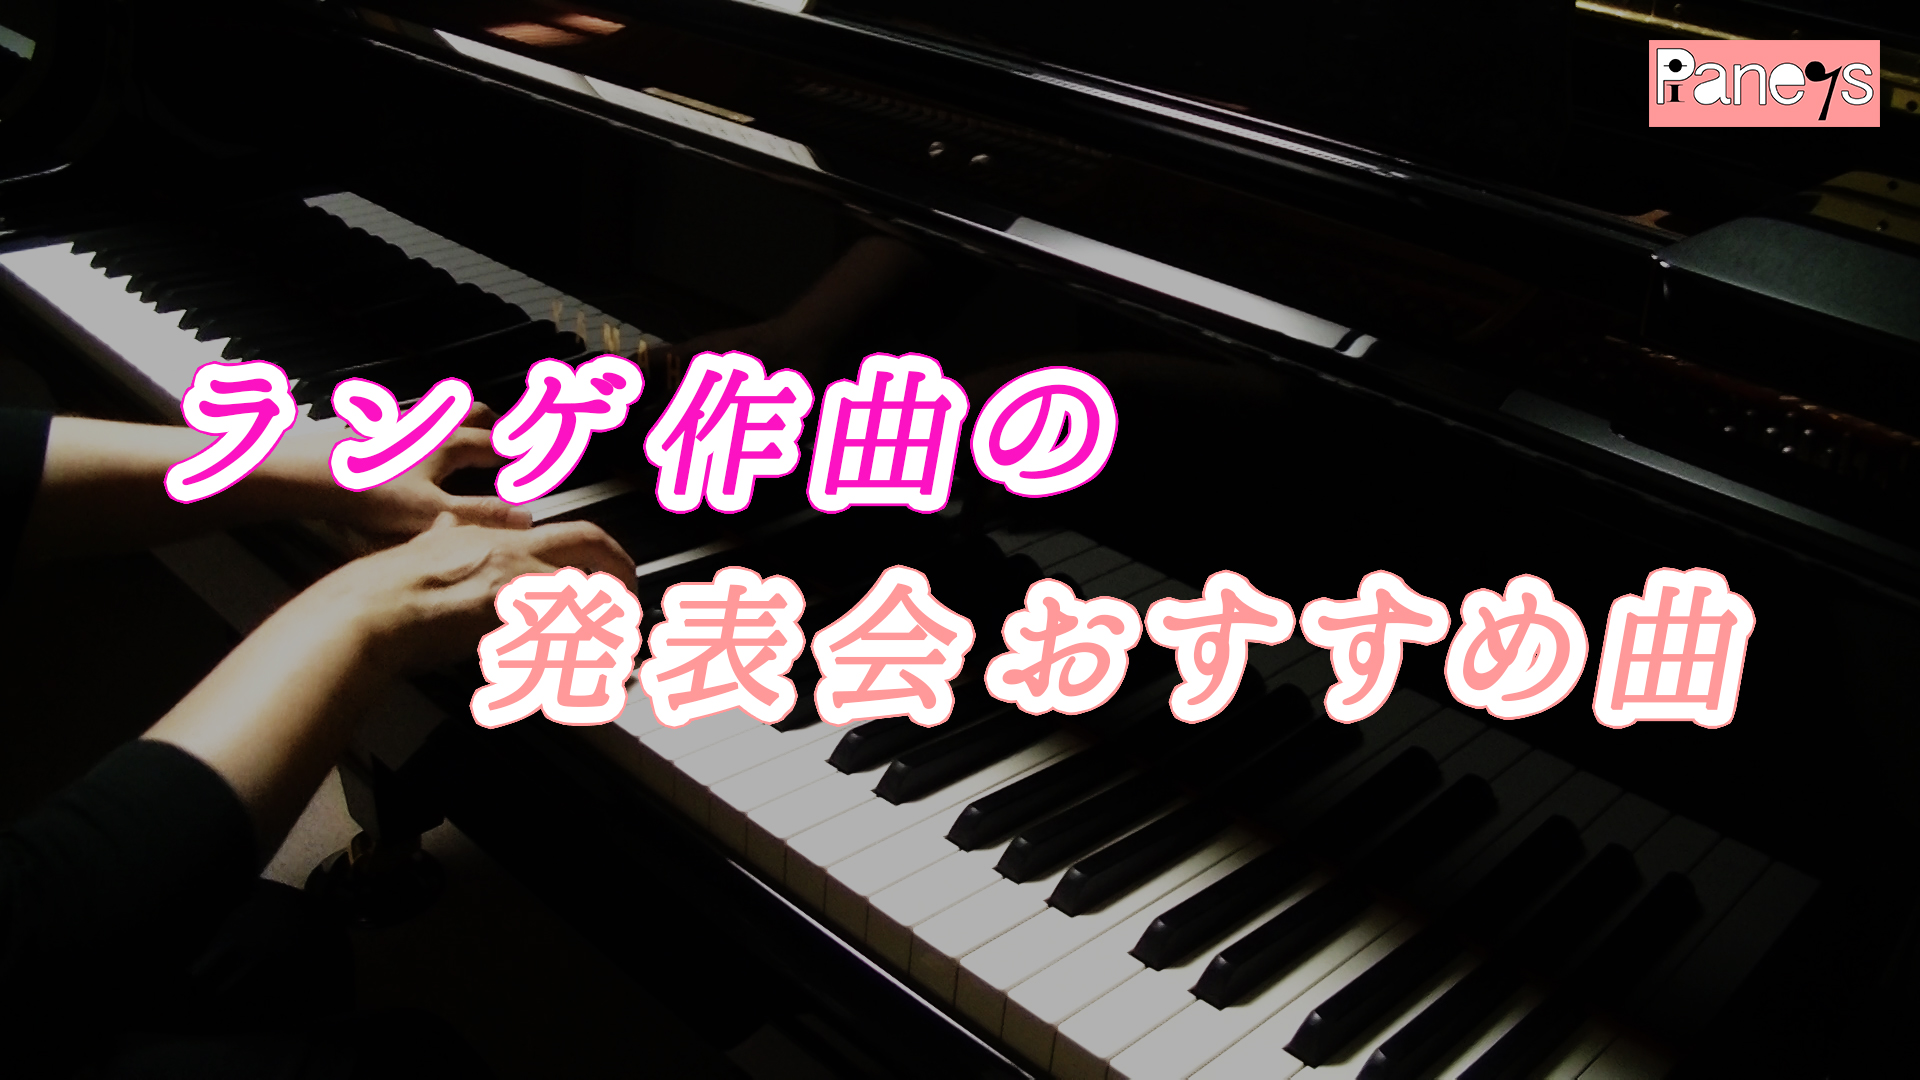 ランゲ作曲の発表会おすすめ曲 動画で選べる ピアノ発表会おすすめ曲